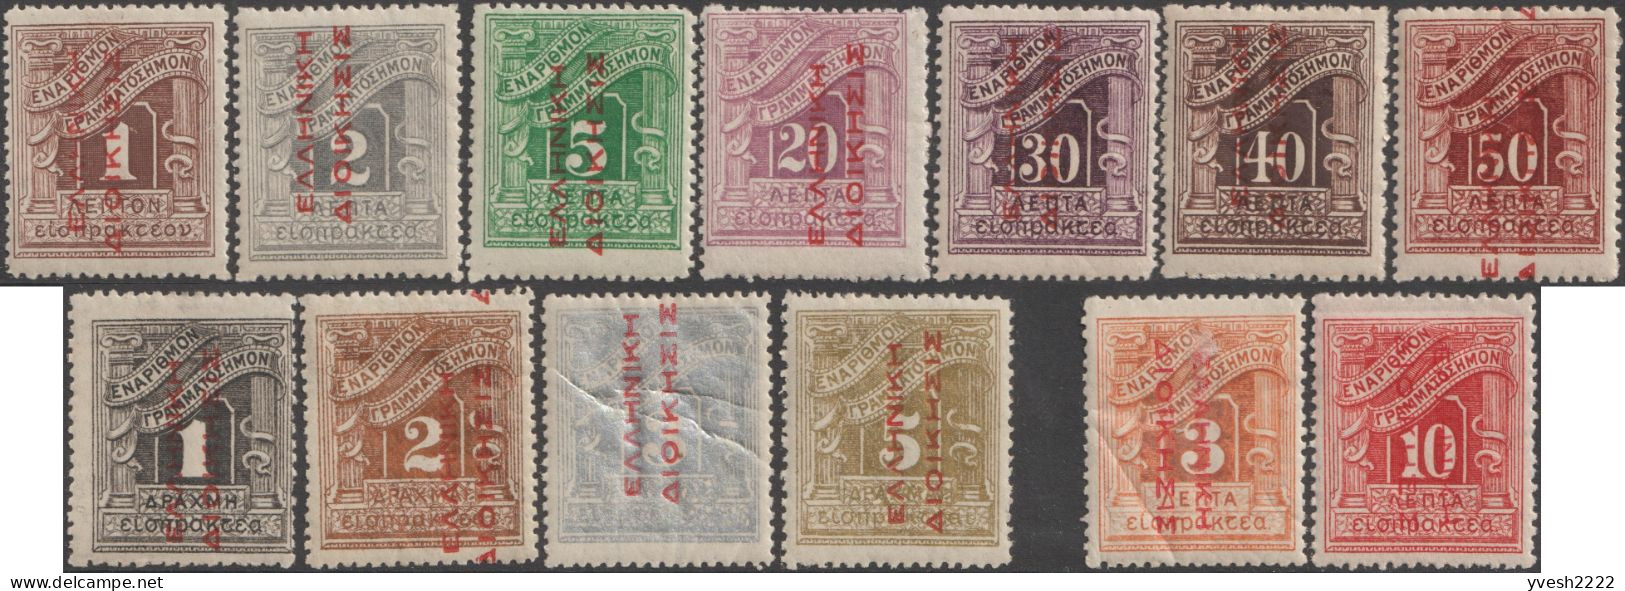 Grèce 1912 Y&T Taxe 52 à 64, Neufs Avec Charnières. Surcharges Rouges - Ungebraucht